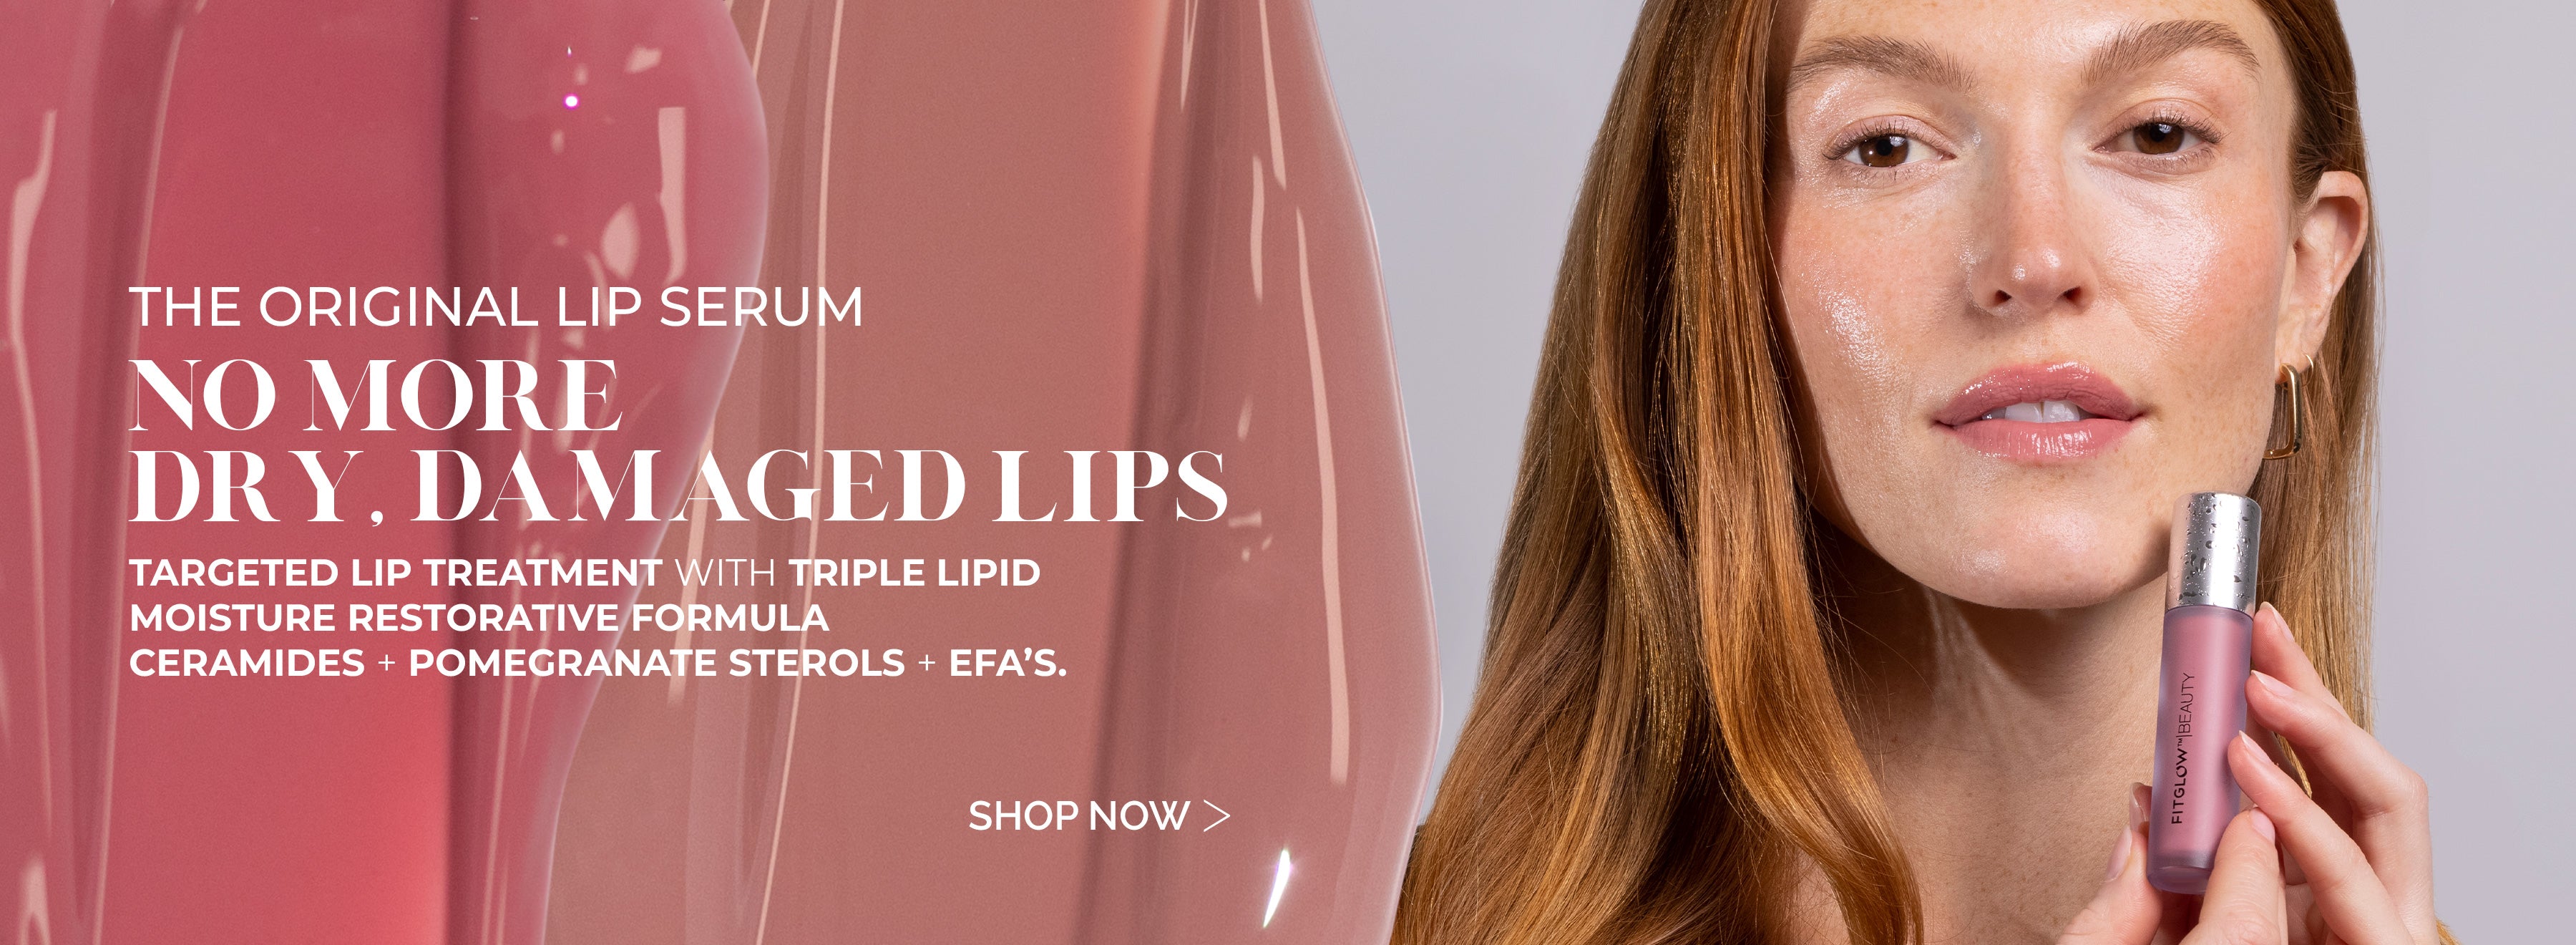 The Original Lip Serum - No more dry, damaged Lips - Shop Now